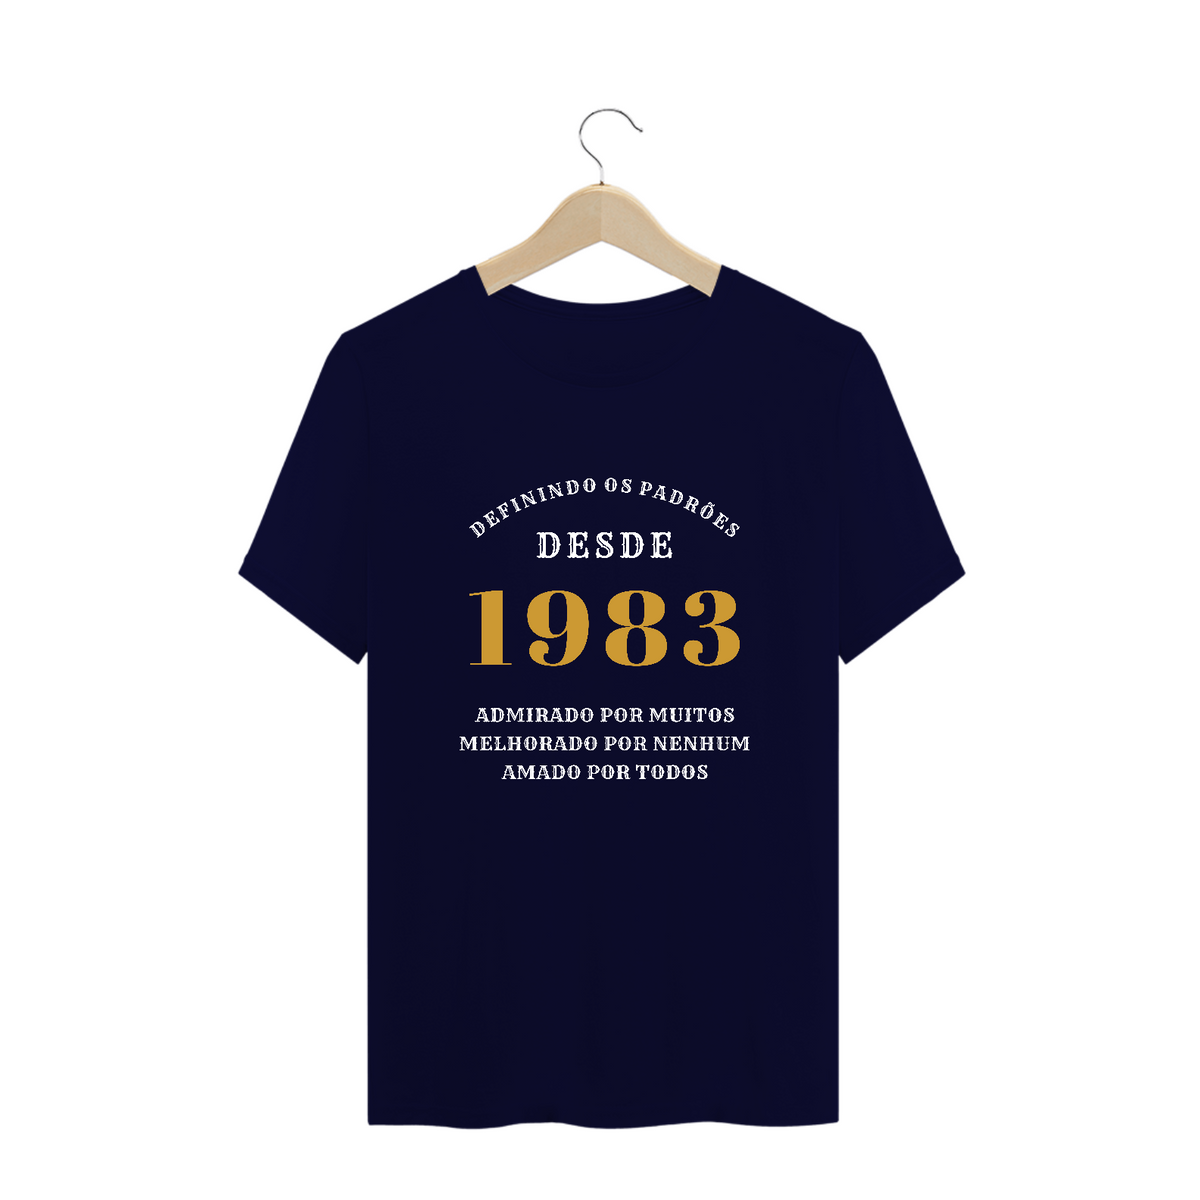 Nome do produto: Camiseta Plus Size Aniversário Admirado Desde 1983